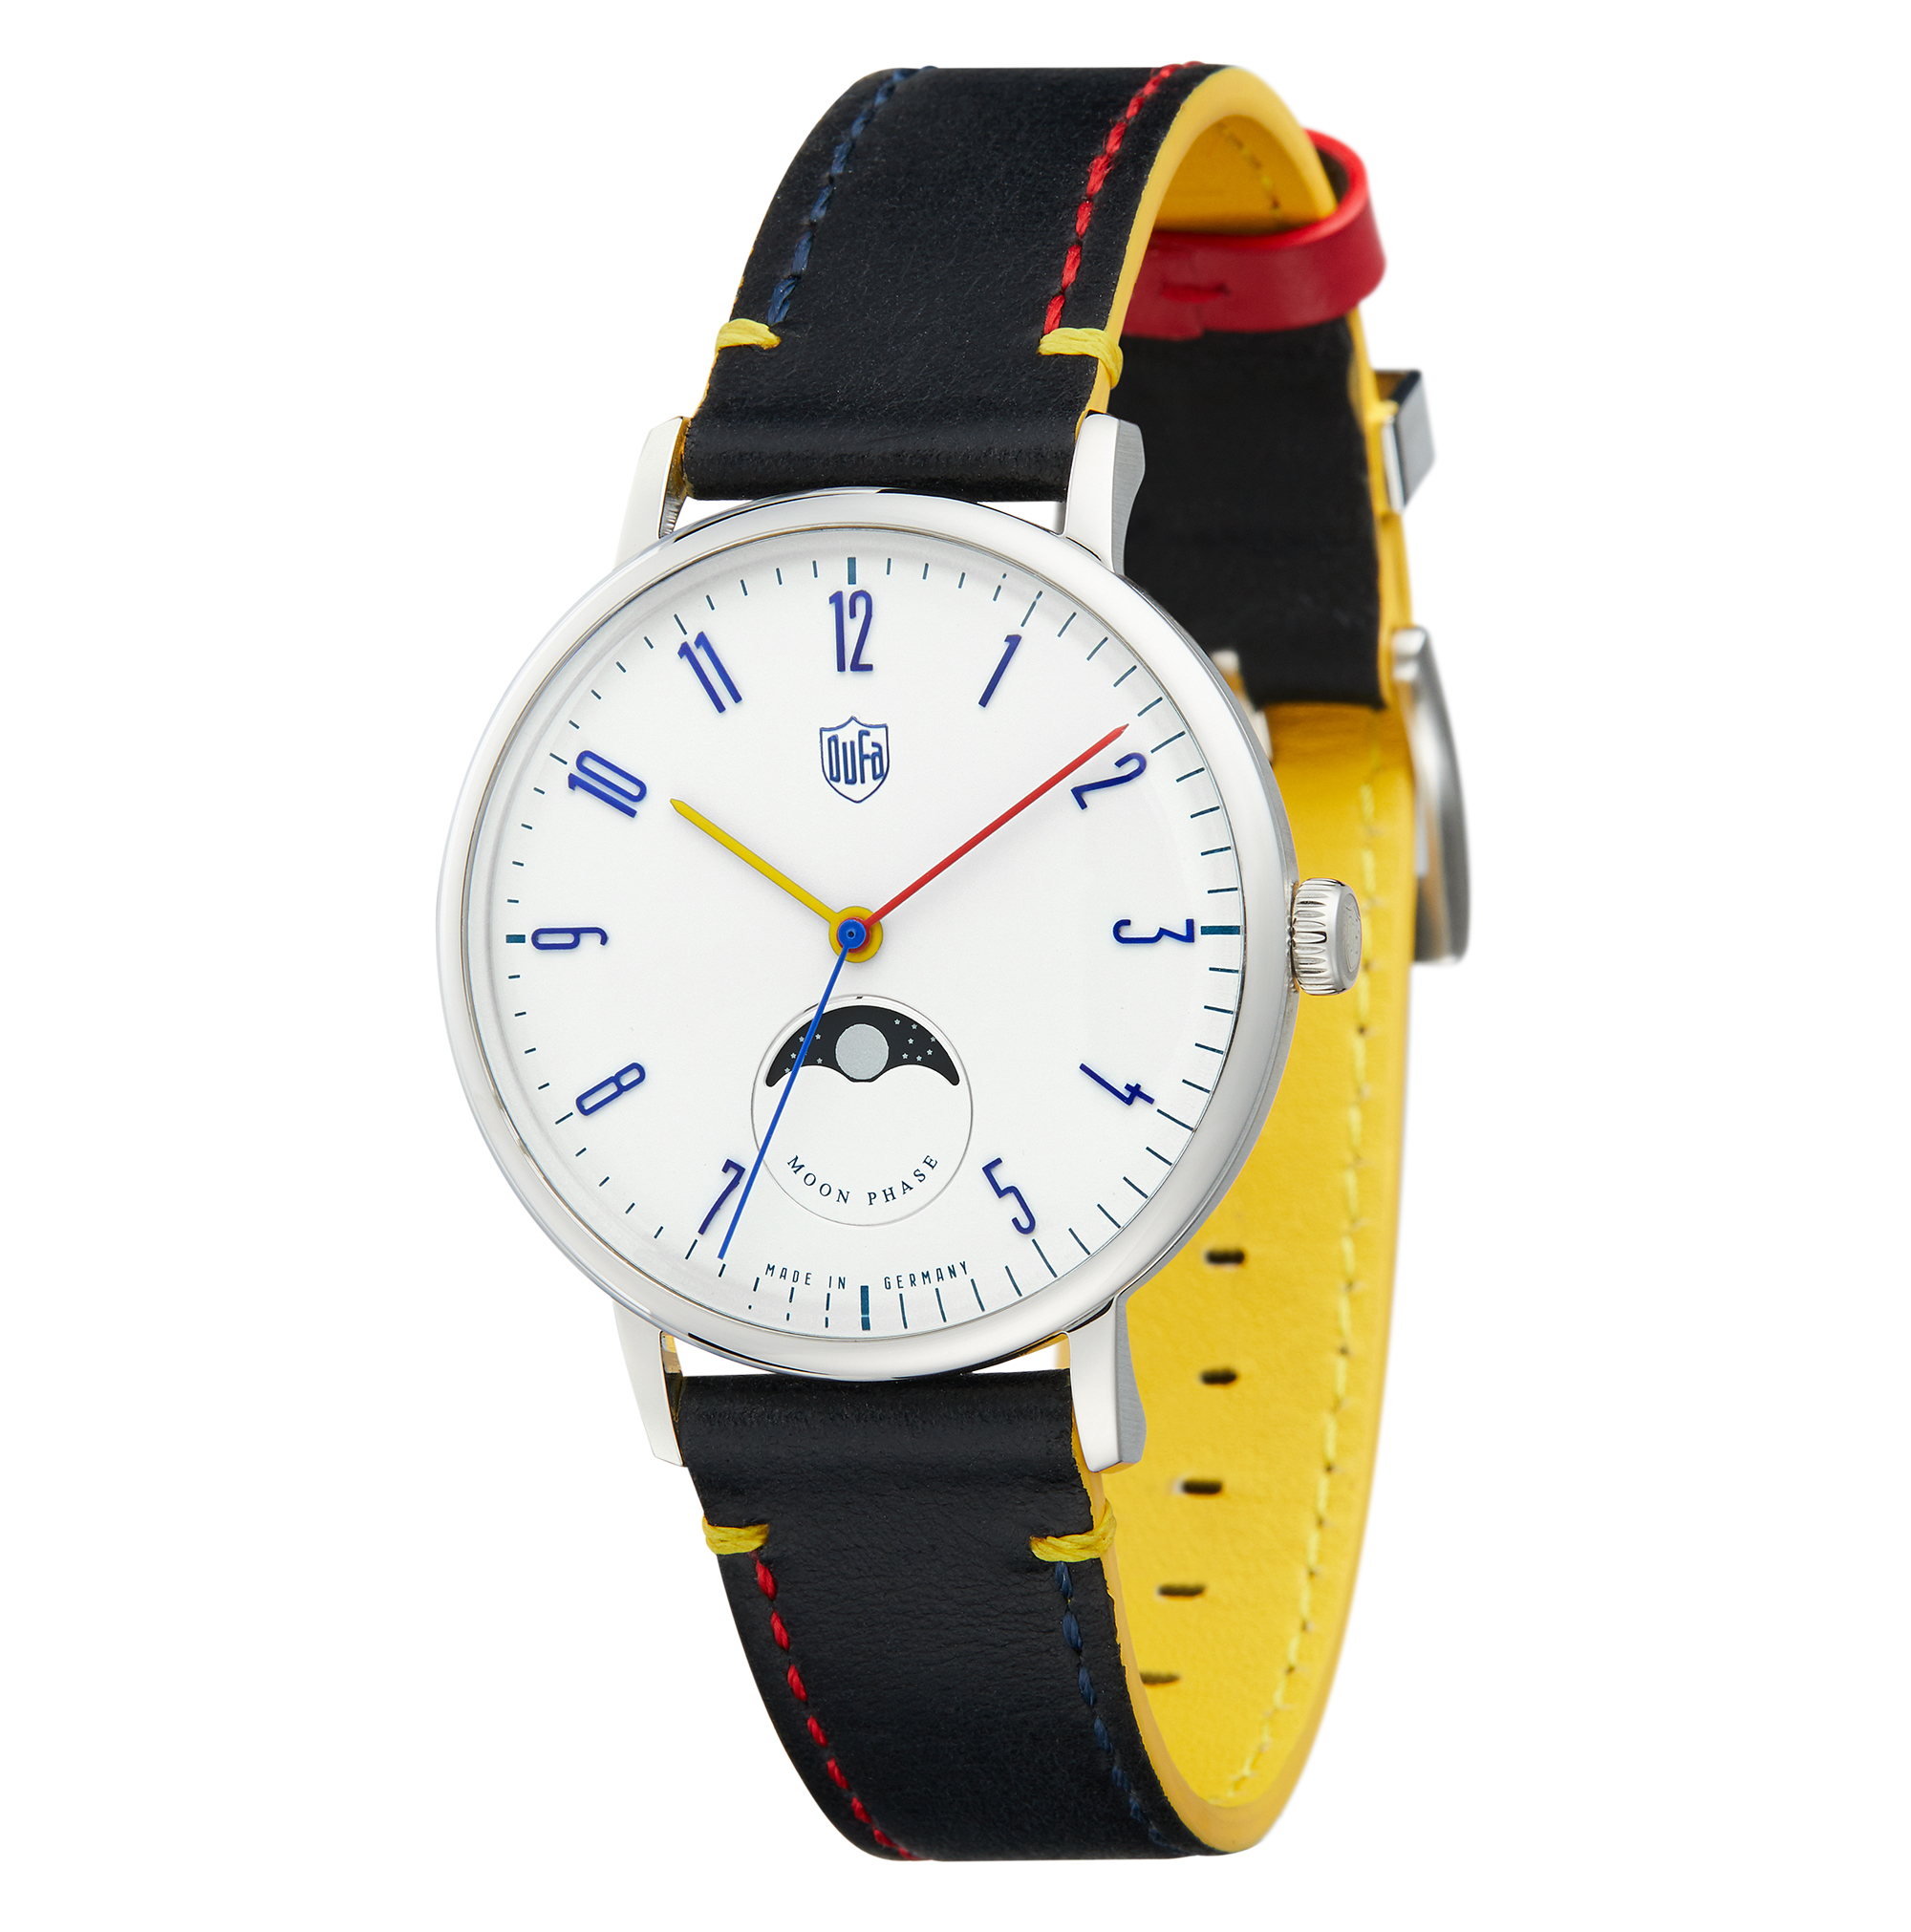 ドイツの腕時計ブランド『ドゥッファ(DUFA) 』が、バウハウスの理念と 